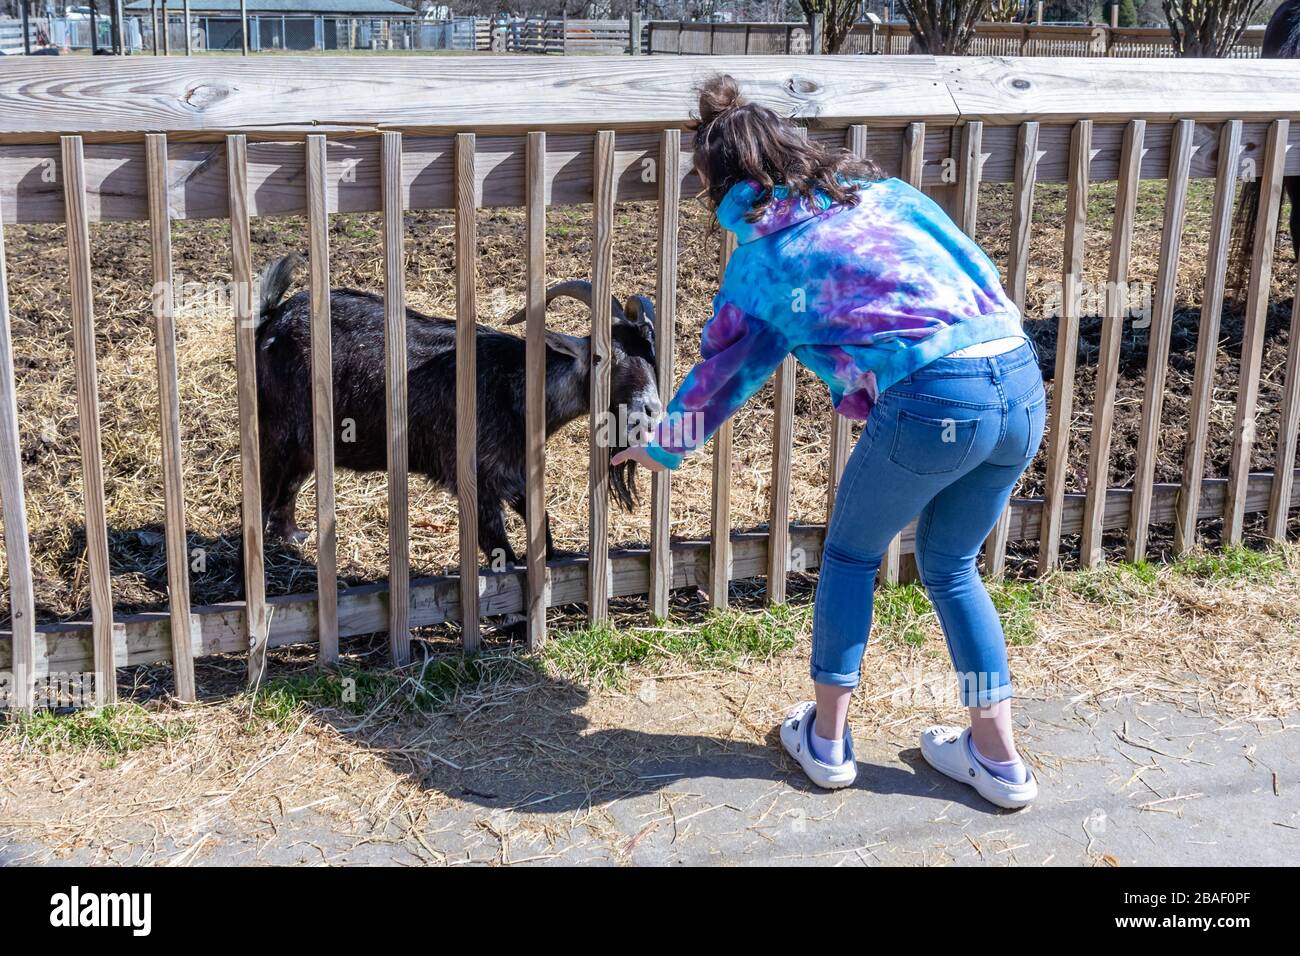 Hampton, va/USA-1 mars 2020: Une jeune fille nourrissant des chèvres dans la section de zoo de jets du parc de ferme Bluebird Gap, une attraction familiale. Banque D'Images